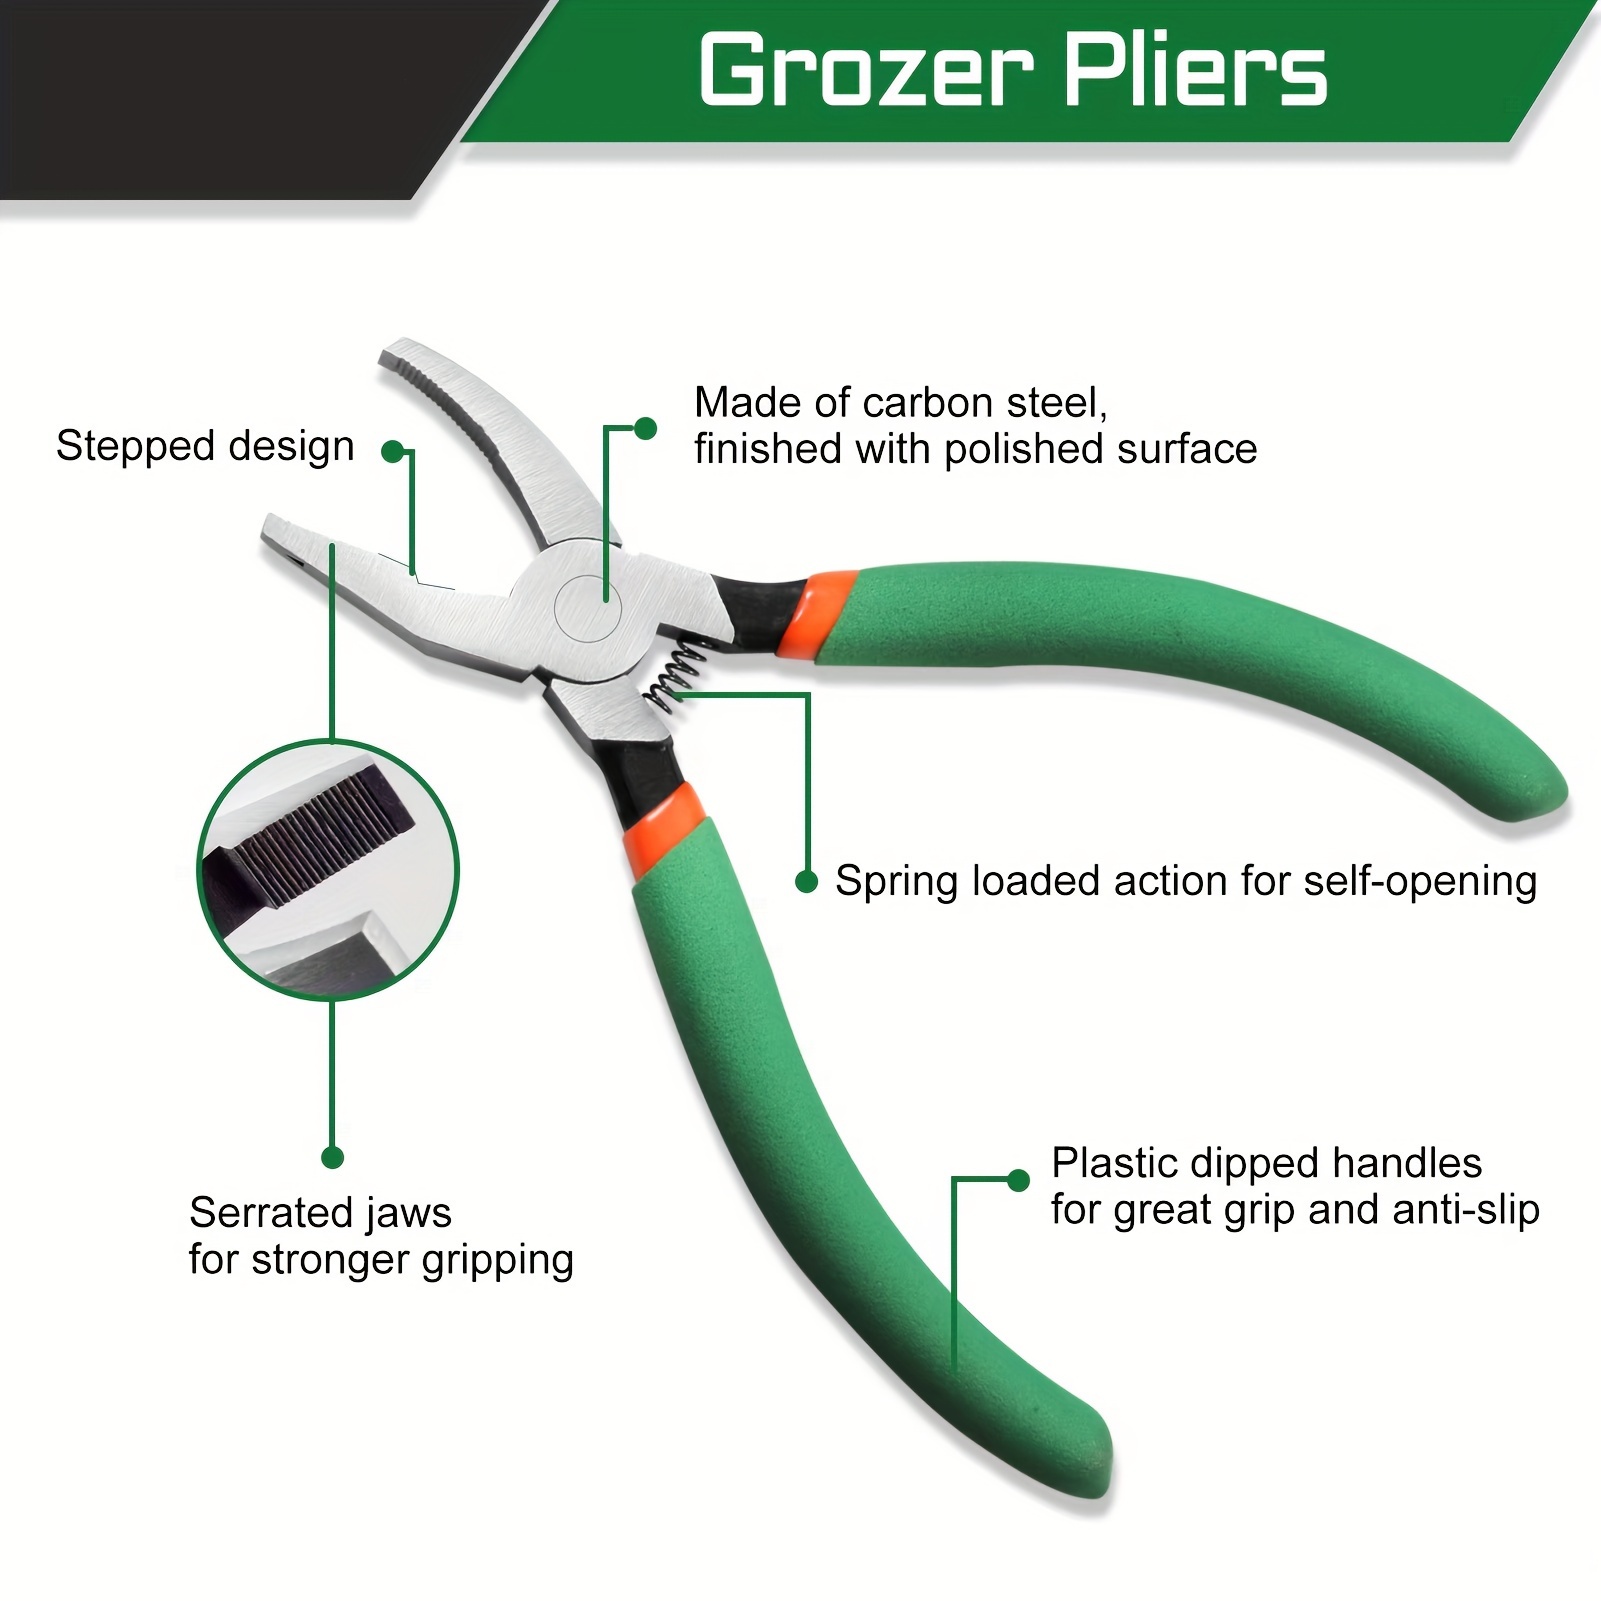 3/8 Breaker/Grozer Pliers